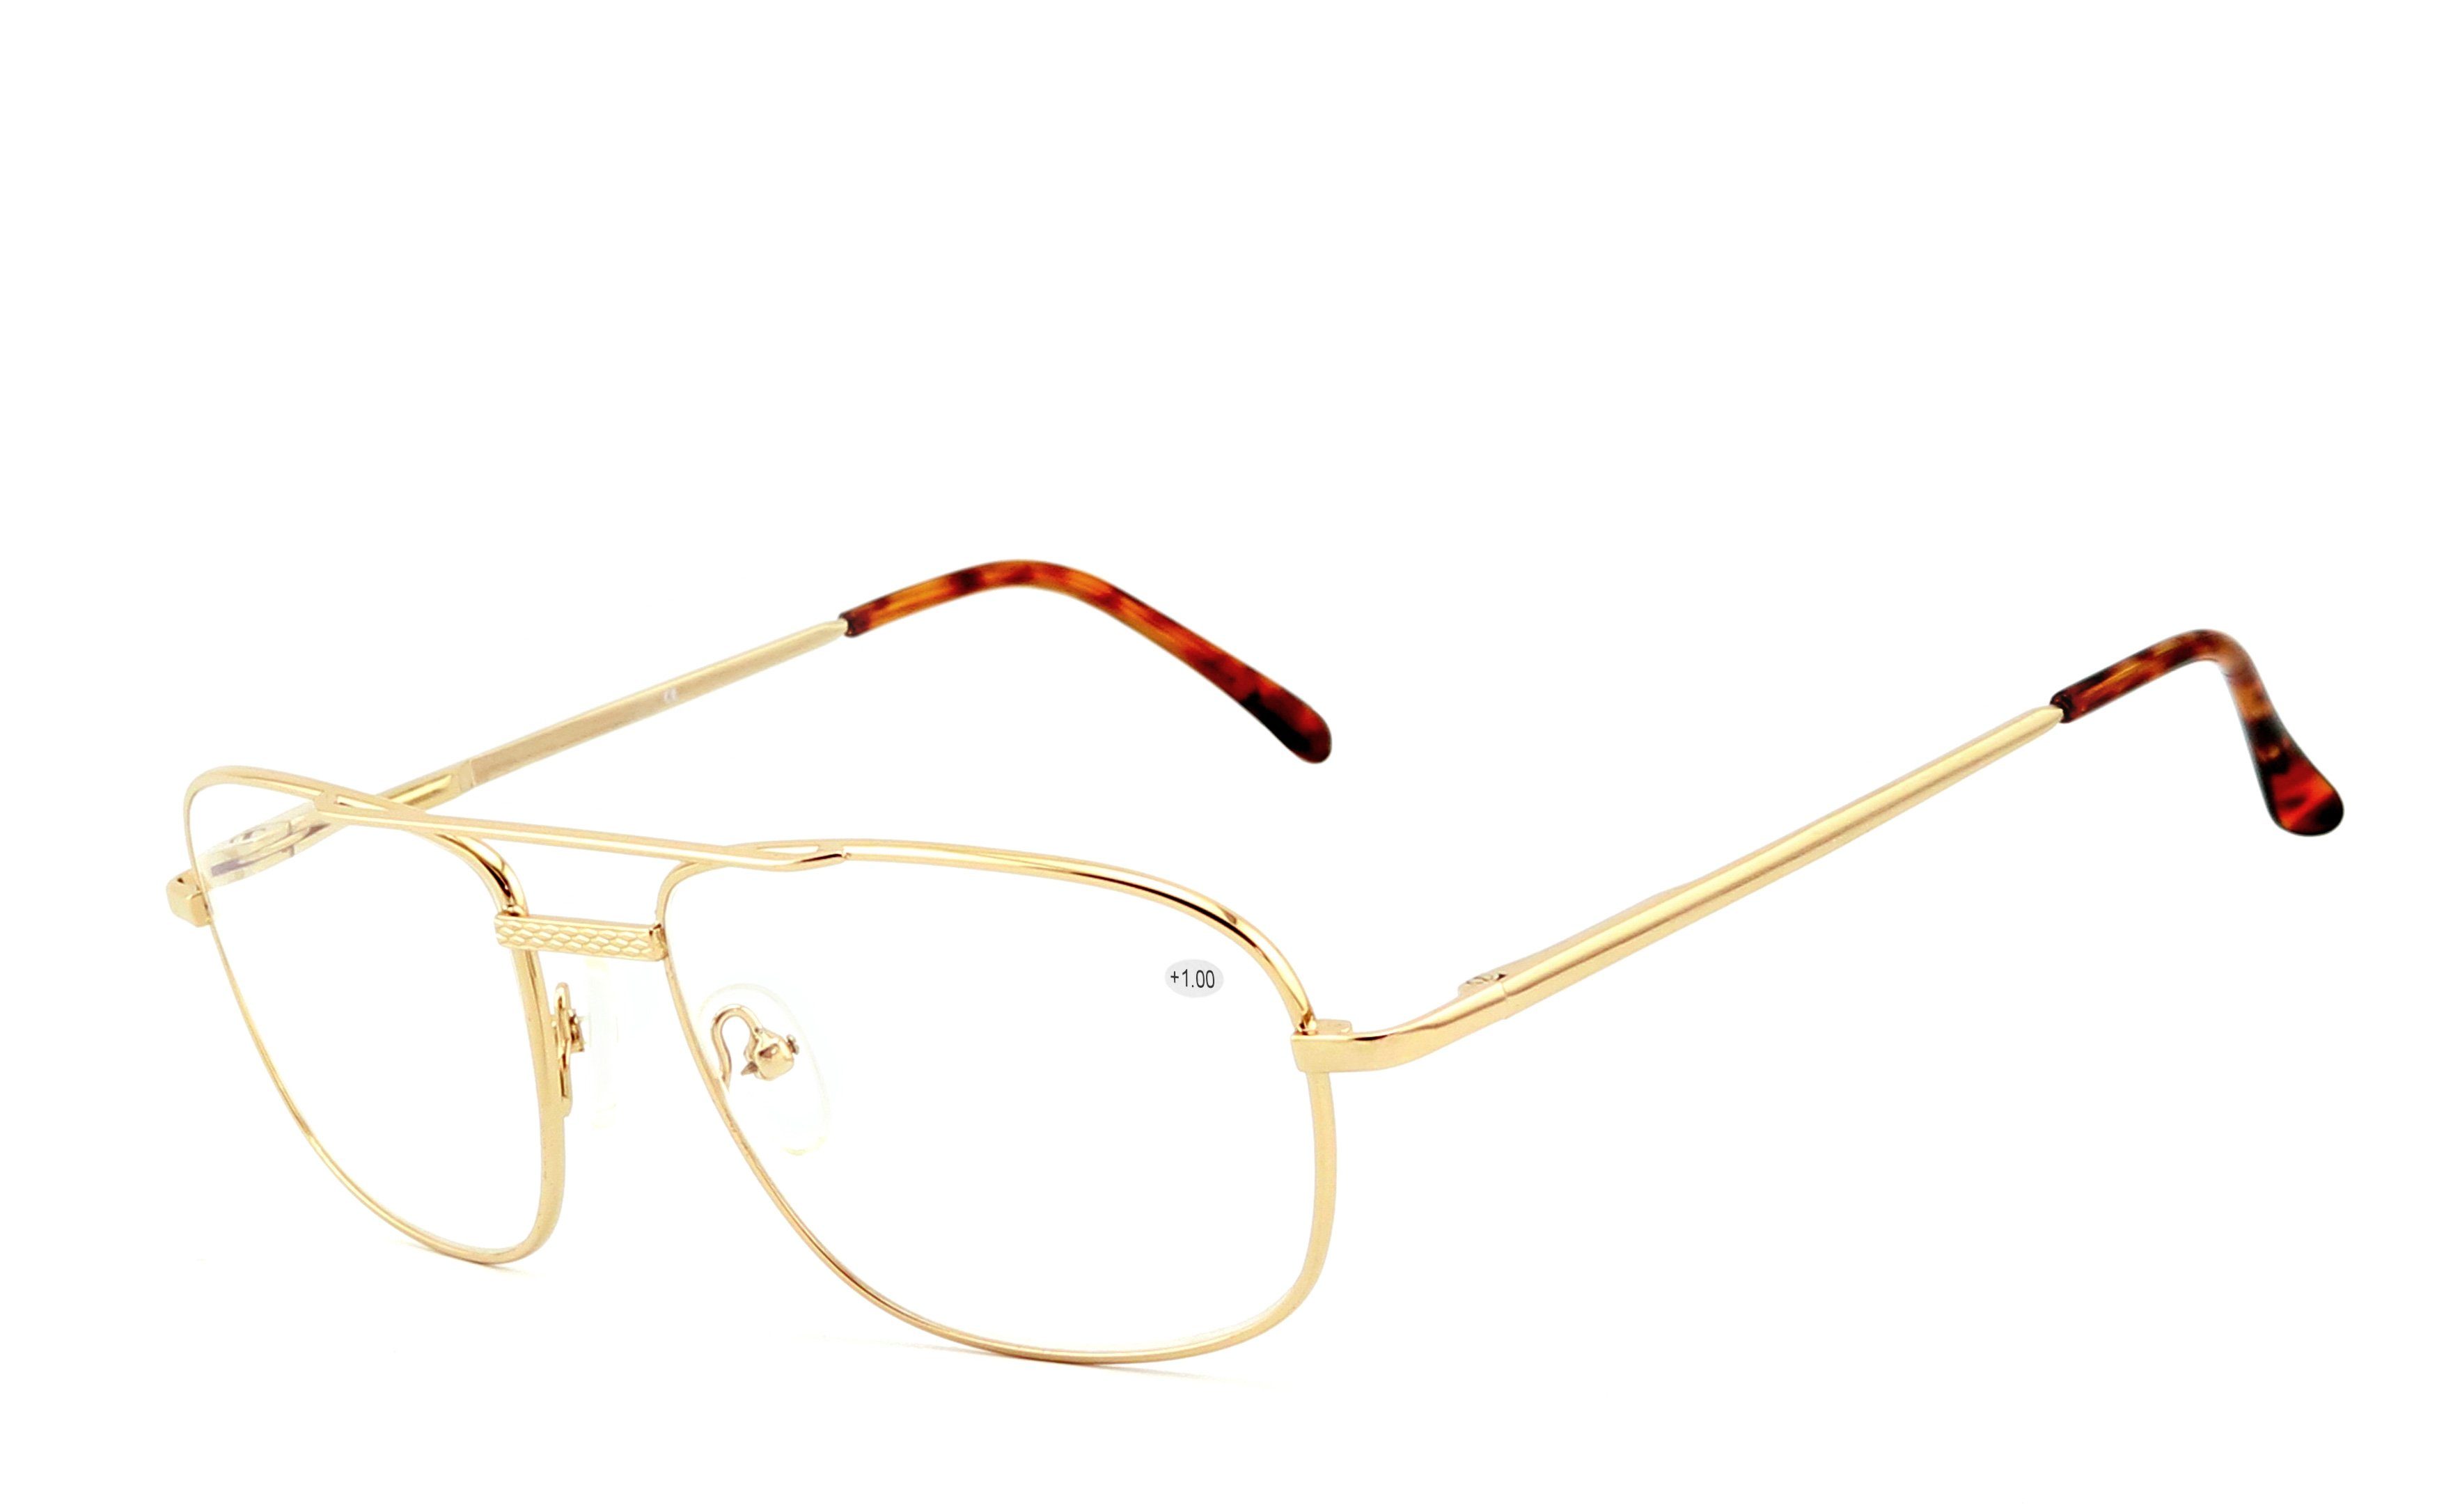 EYESTUFF Lesebrille Brillenbügel gold, Flex-Scharnieren Lesebrille hochwertigen 008 mit